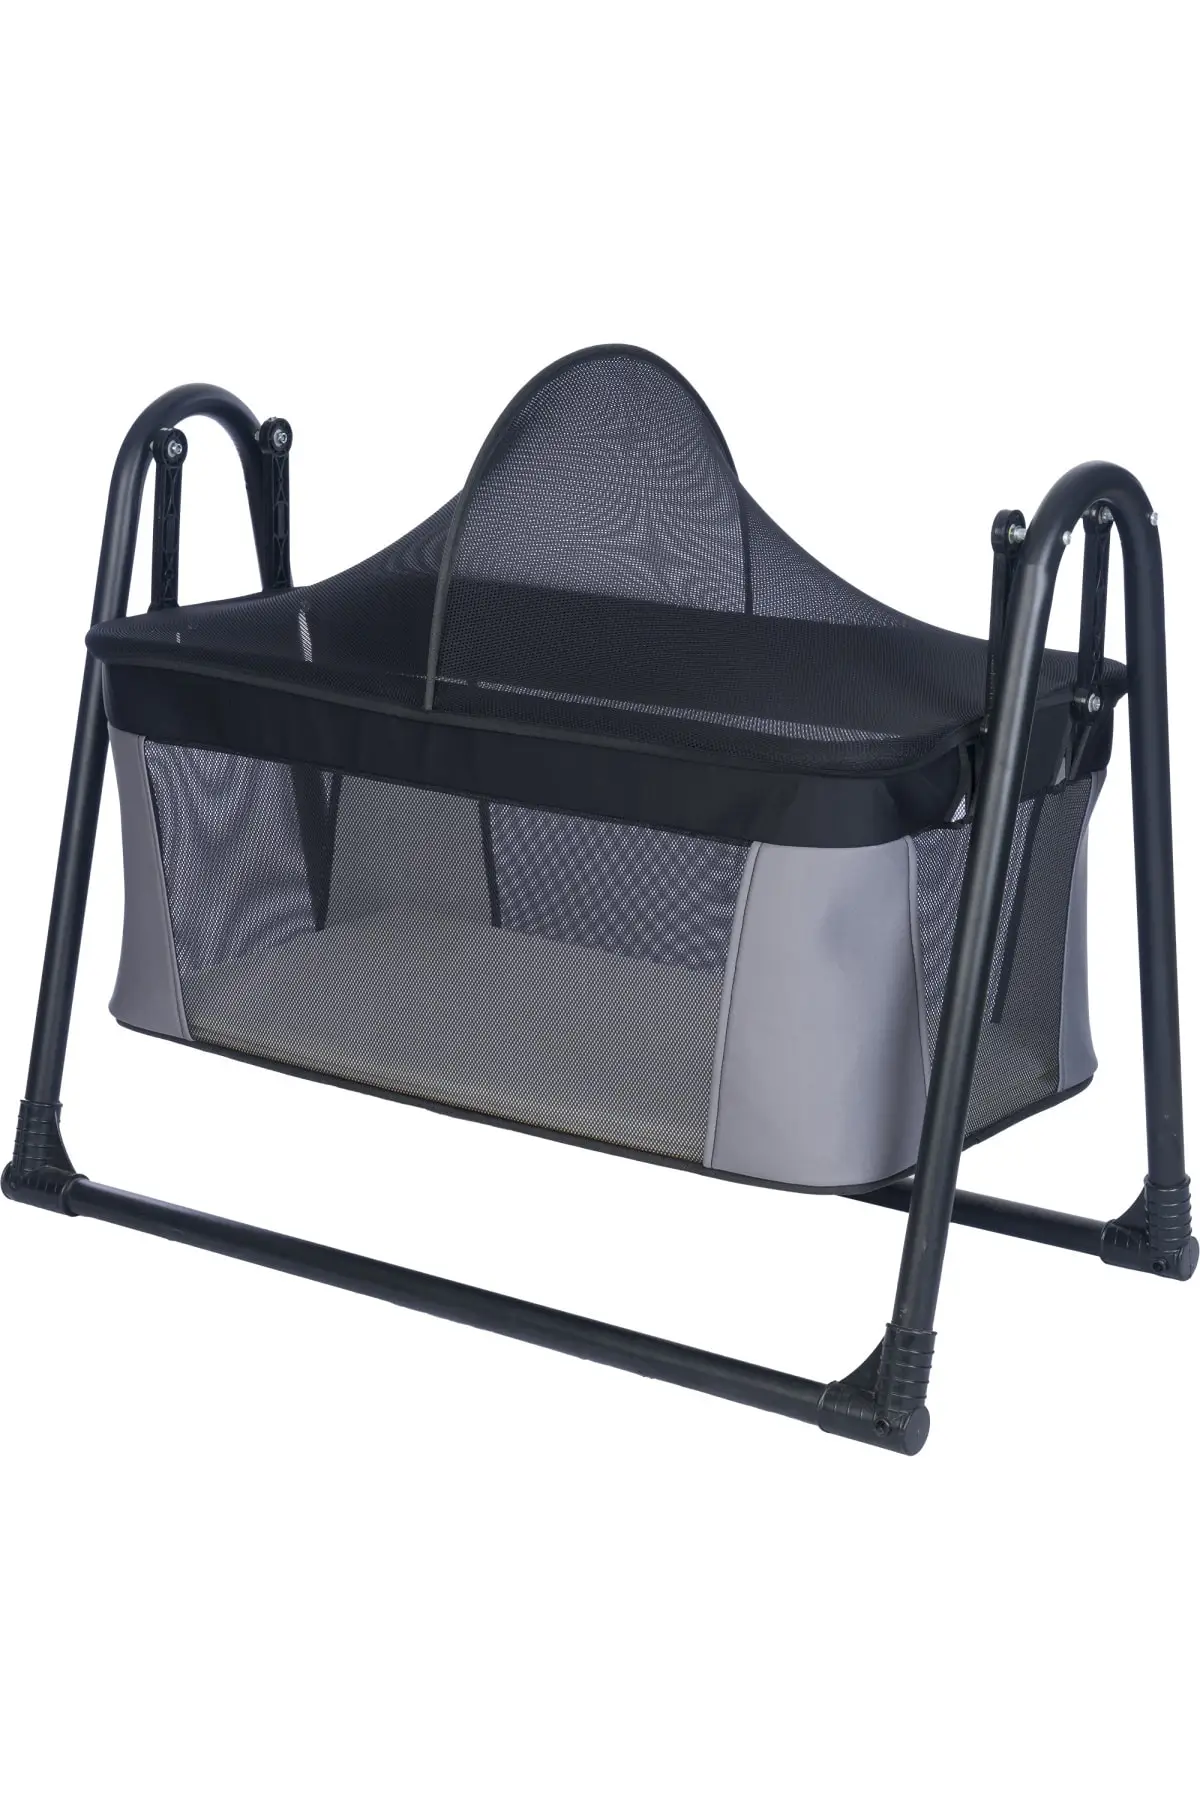 Luxury Dangle Portable Kurulumlu Basket Cradle Hammock Bed Crib